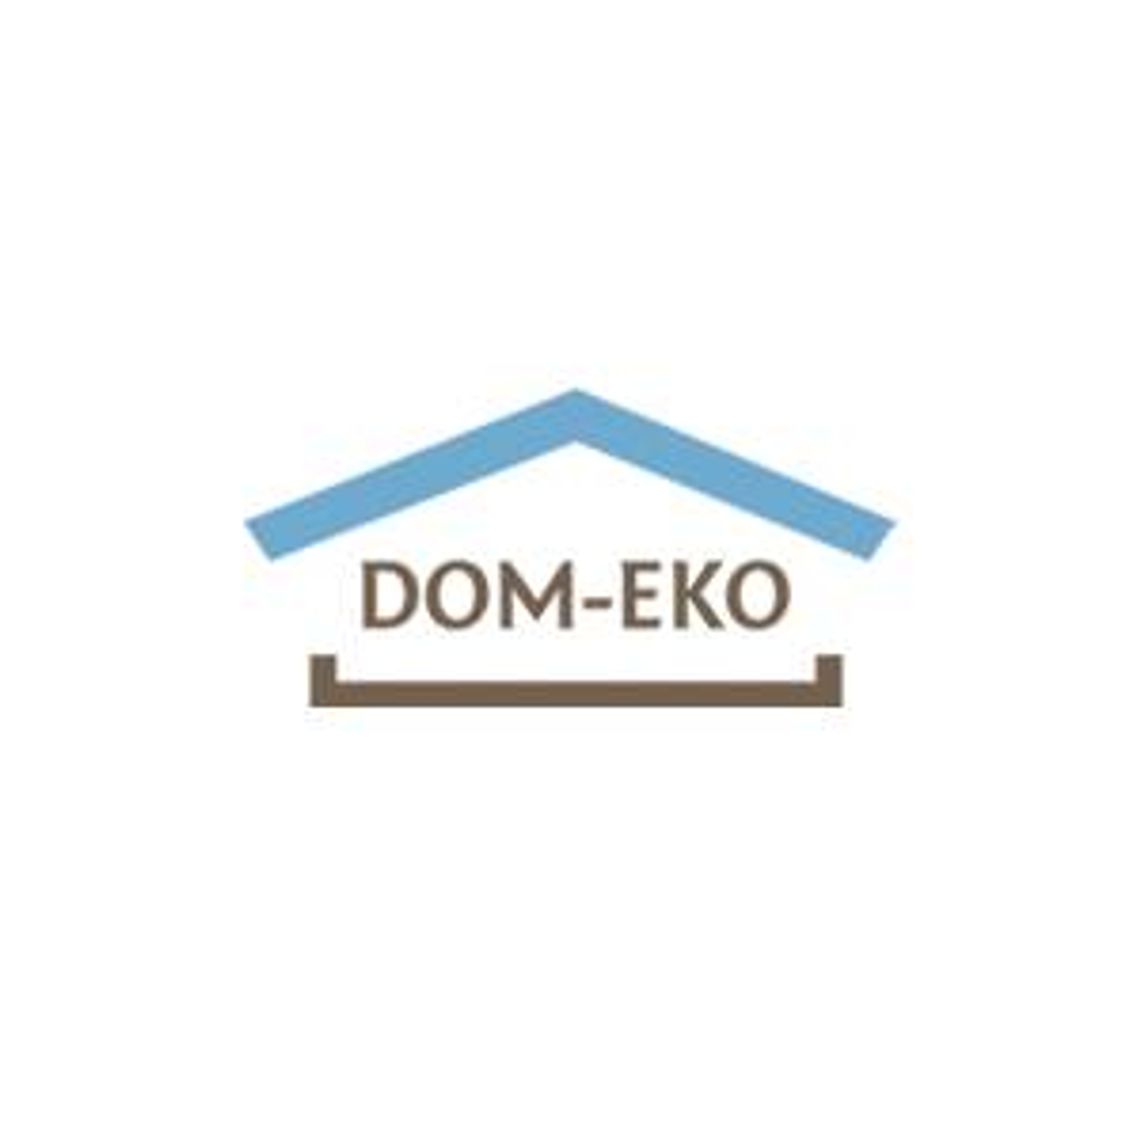 Mieszkania deweloperskie Poznań – DOM-EKO